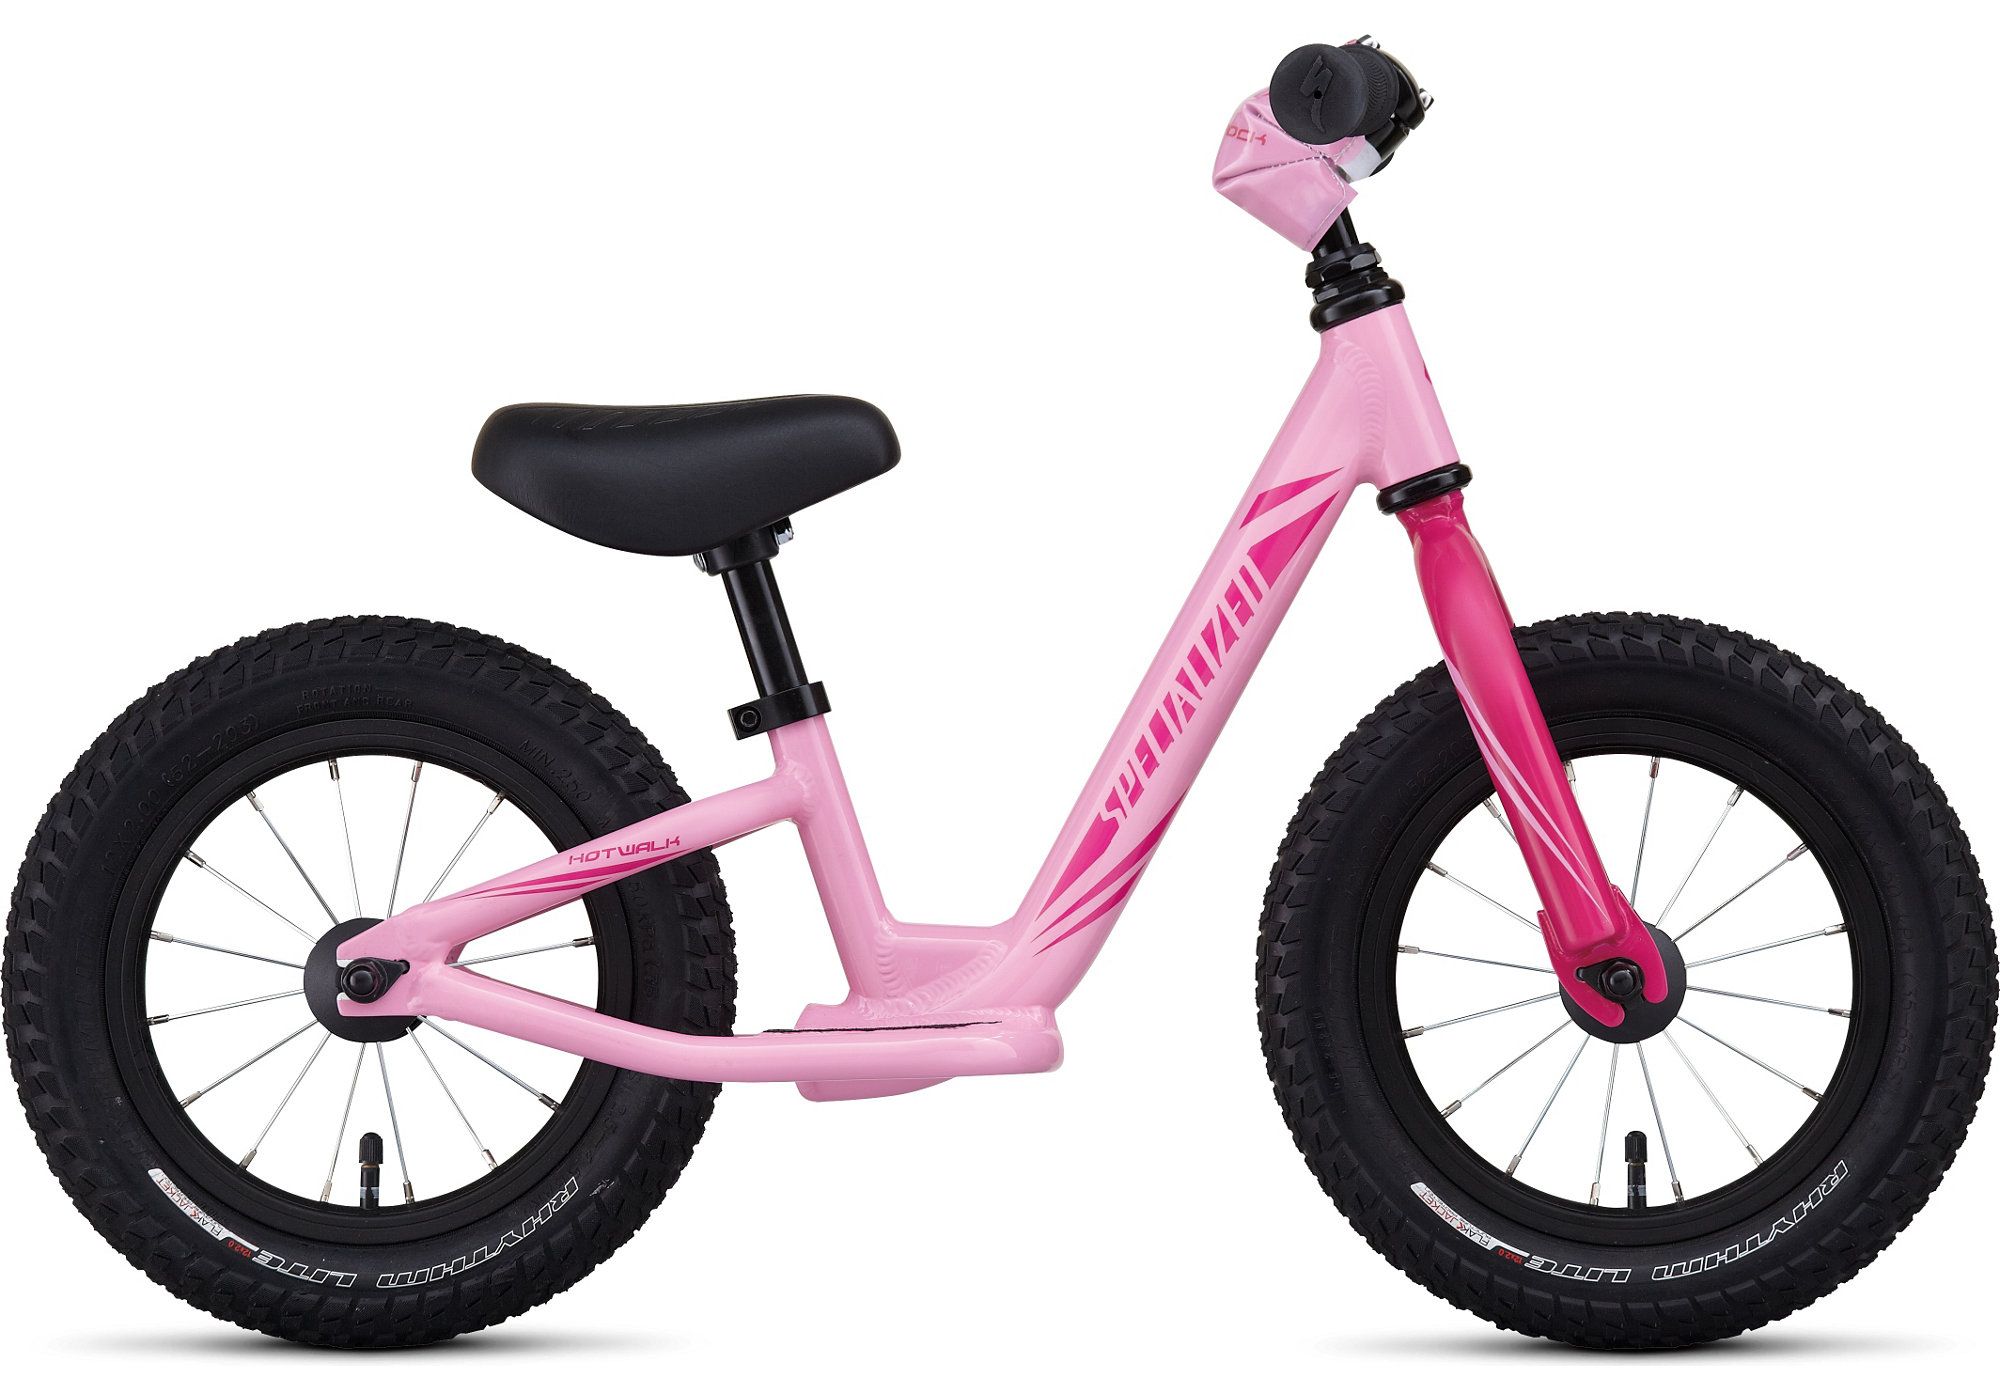  Отзывы о Детском велосипеде Specialized Hotwalk girl 2016